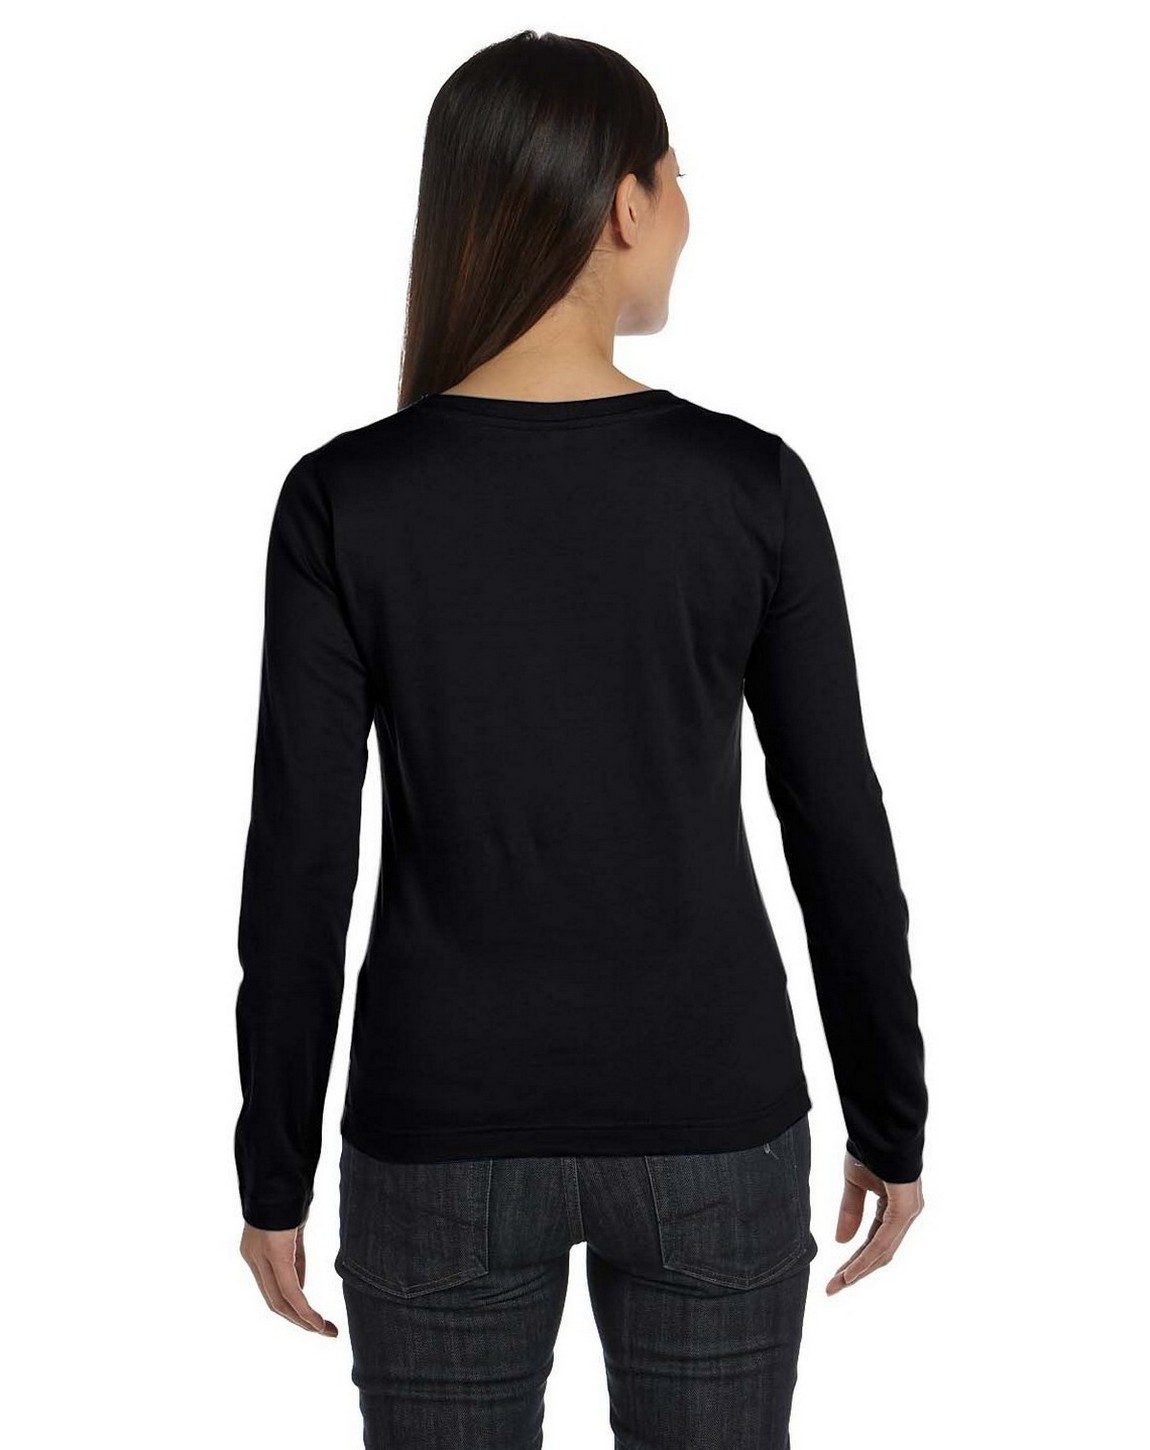 LAT 3588 Womens Ringspun Long-Sleeve T-Shirt - ApparelnBags.com